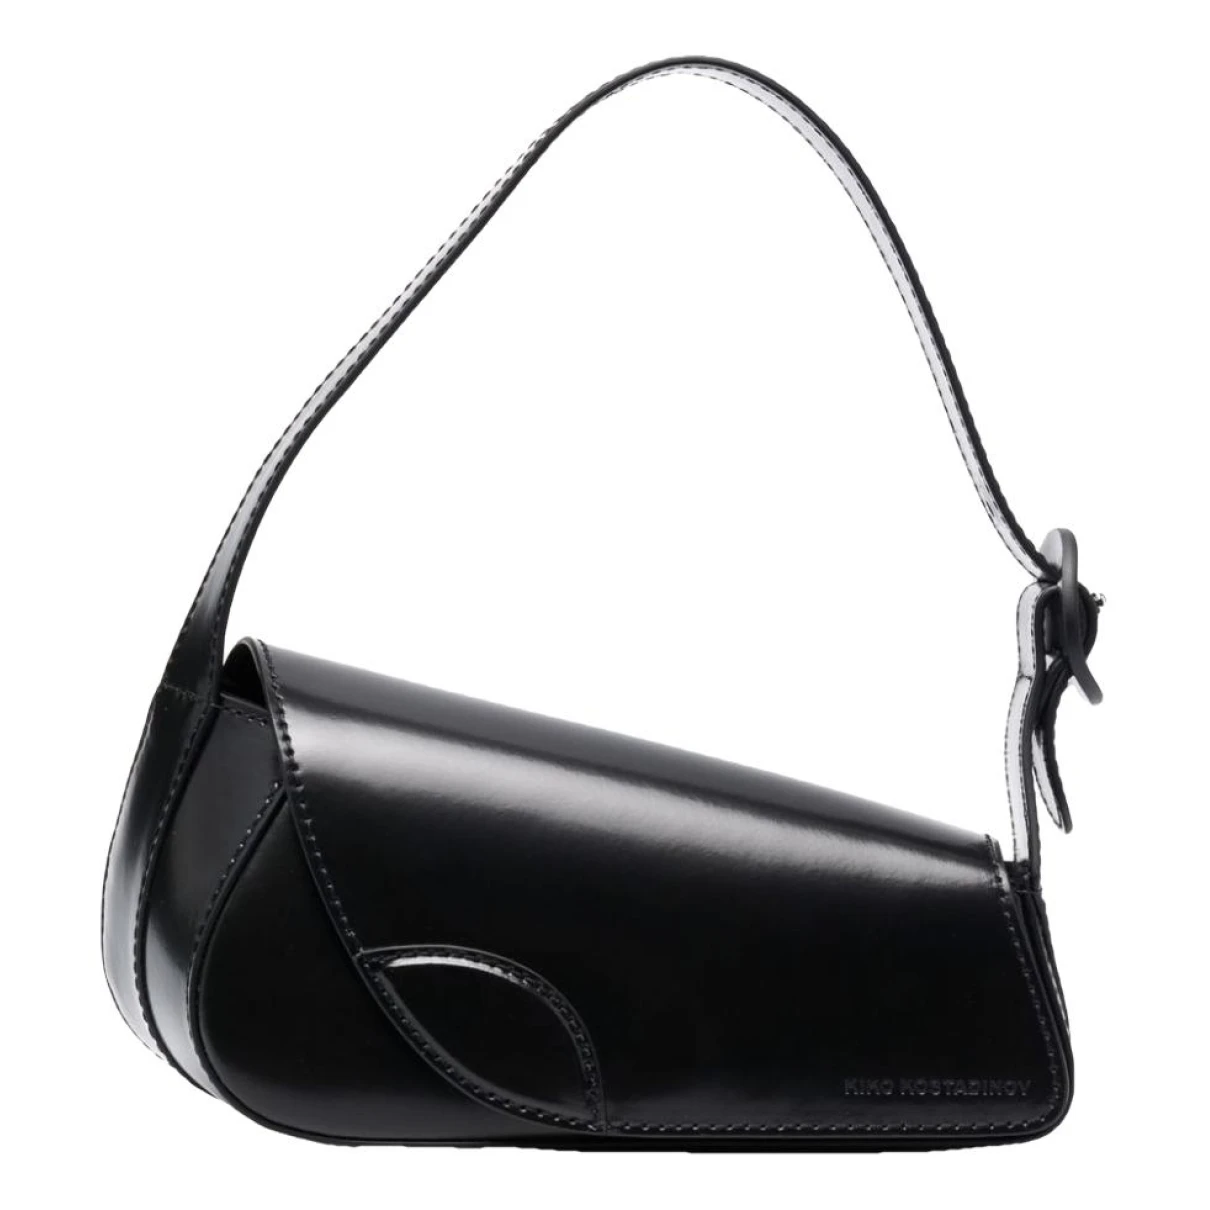 Pre-owned Kiko Kostadinov Leather Handbag In Black